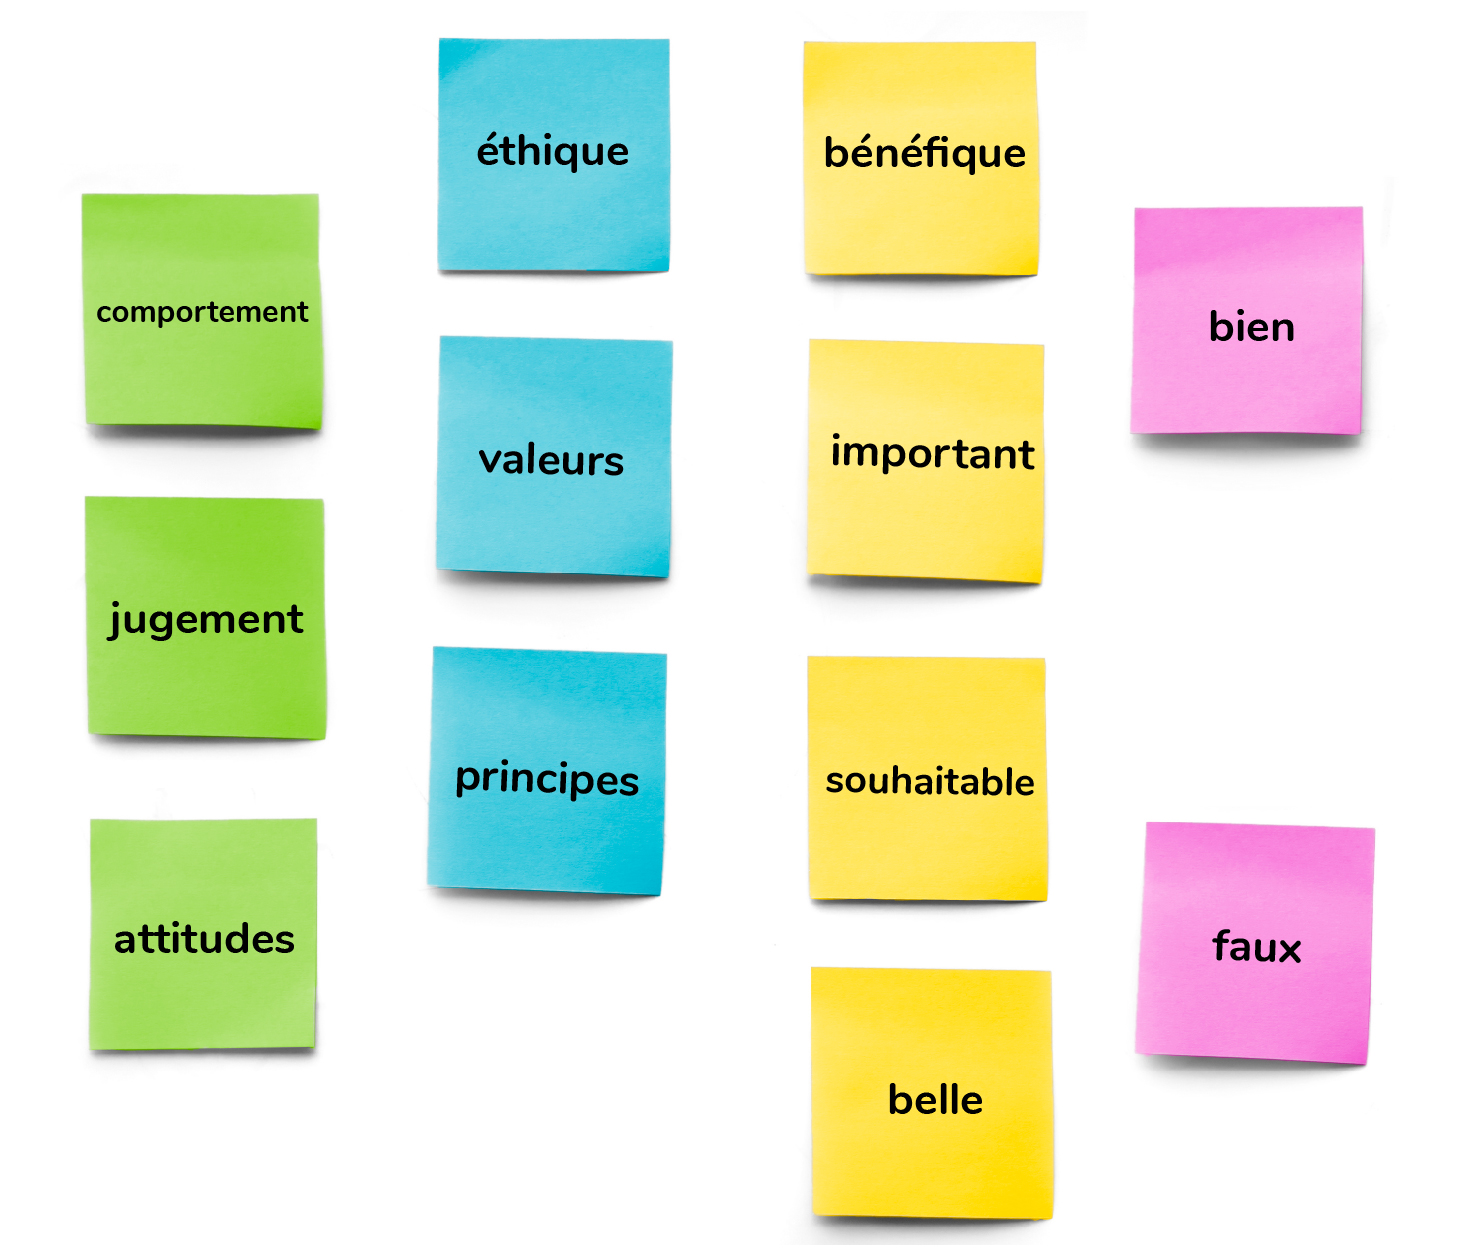 Notes autocollantes avec les mots: comportement, jugement, attitudes, éthique, valeurs, principes, bénéfique, important, souhaitable, beau, bien, mal.